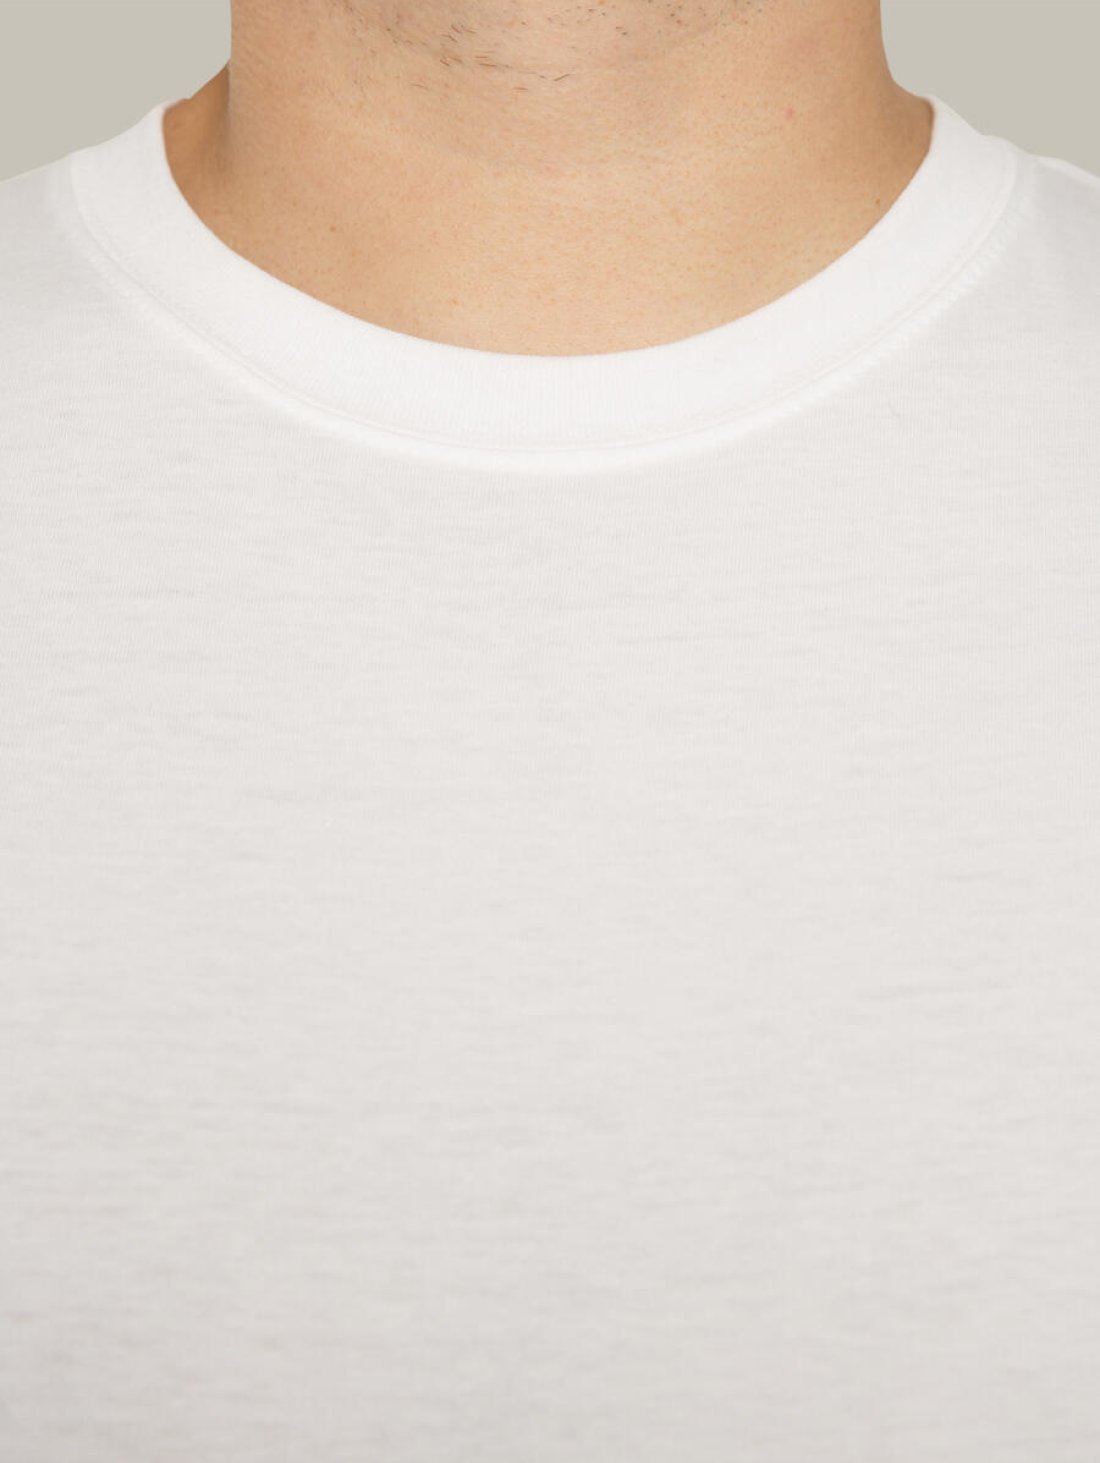 Чоловіча футболка, біла з принтом аватара Hopper 013